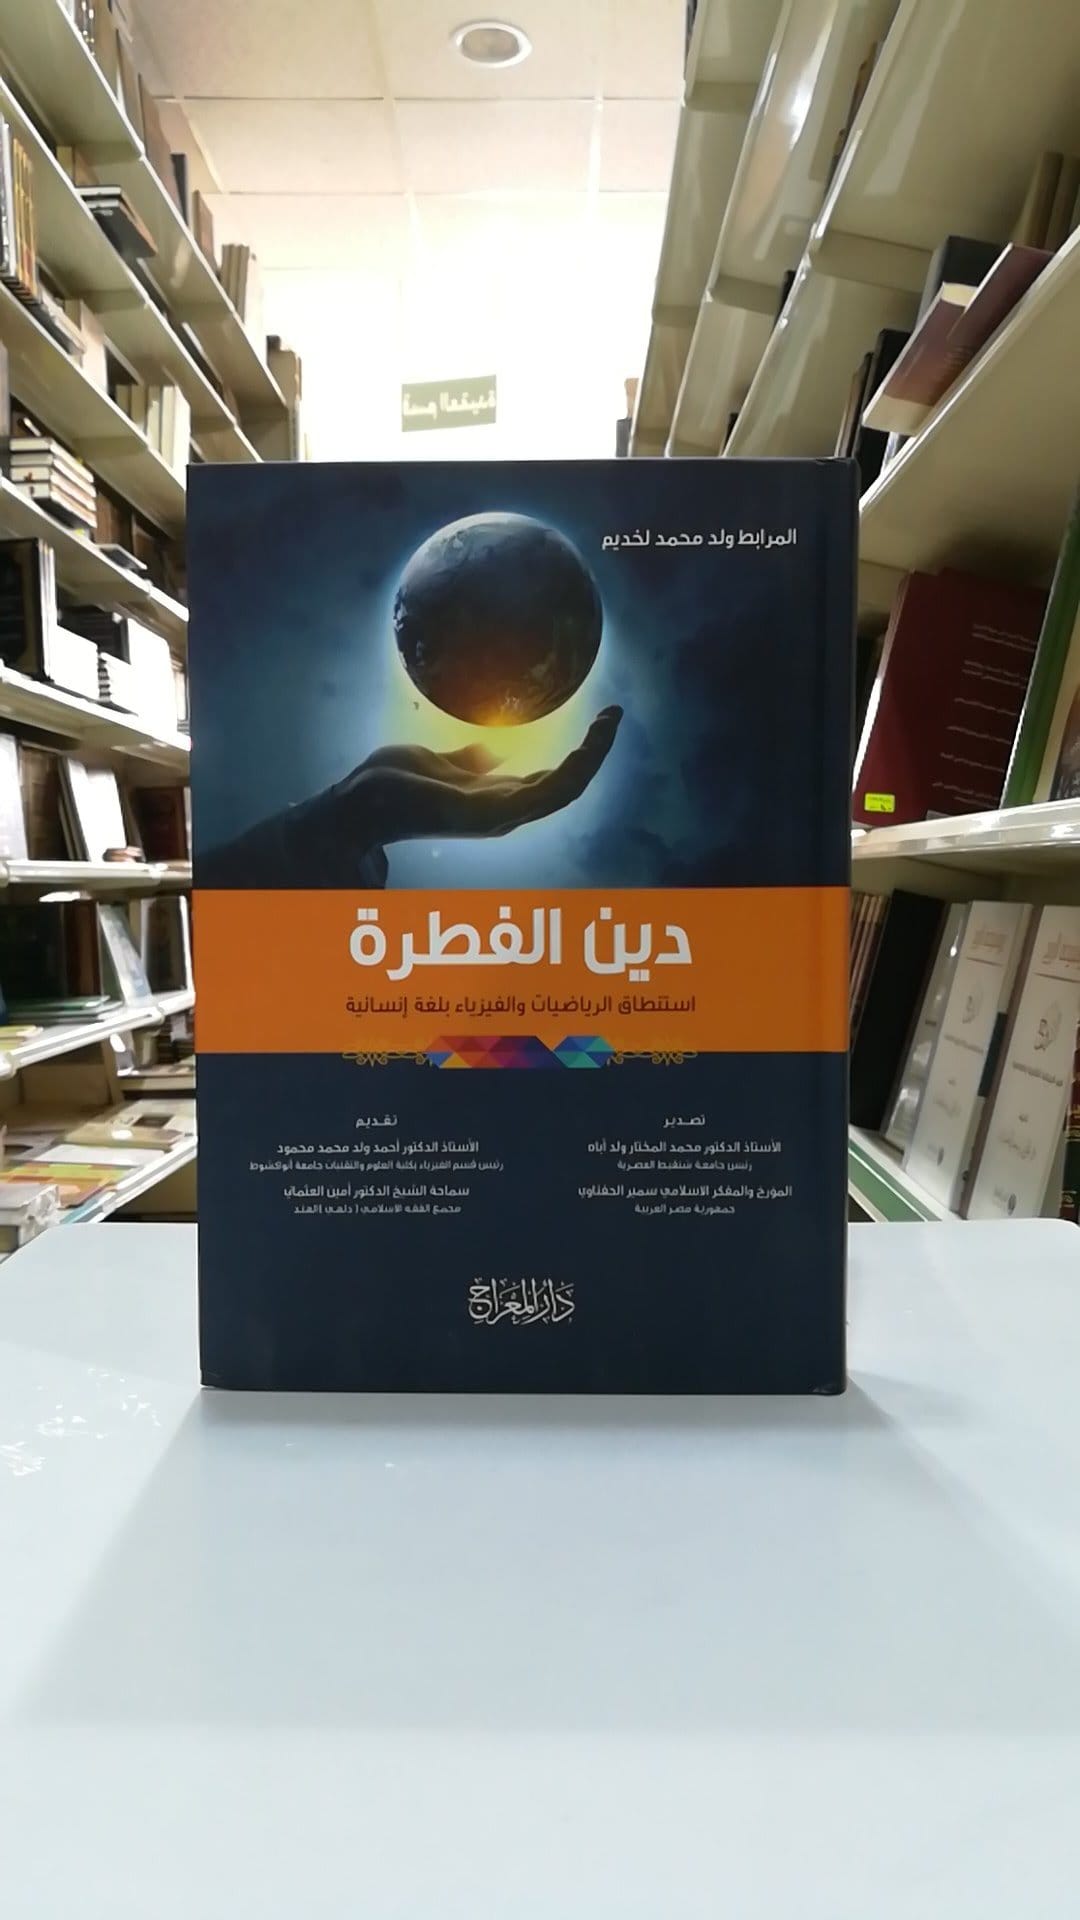 جديد كتاب: دين الفطرة في المعارض العربية والدولية